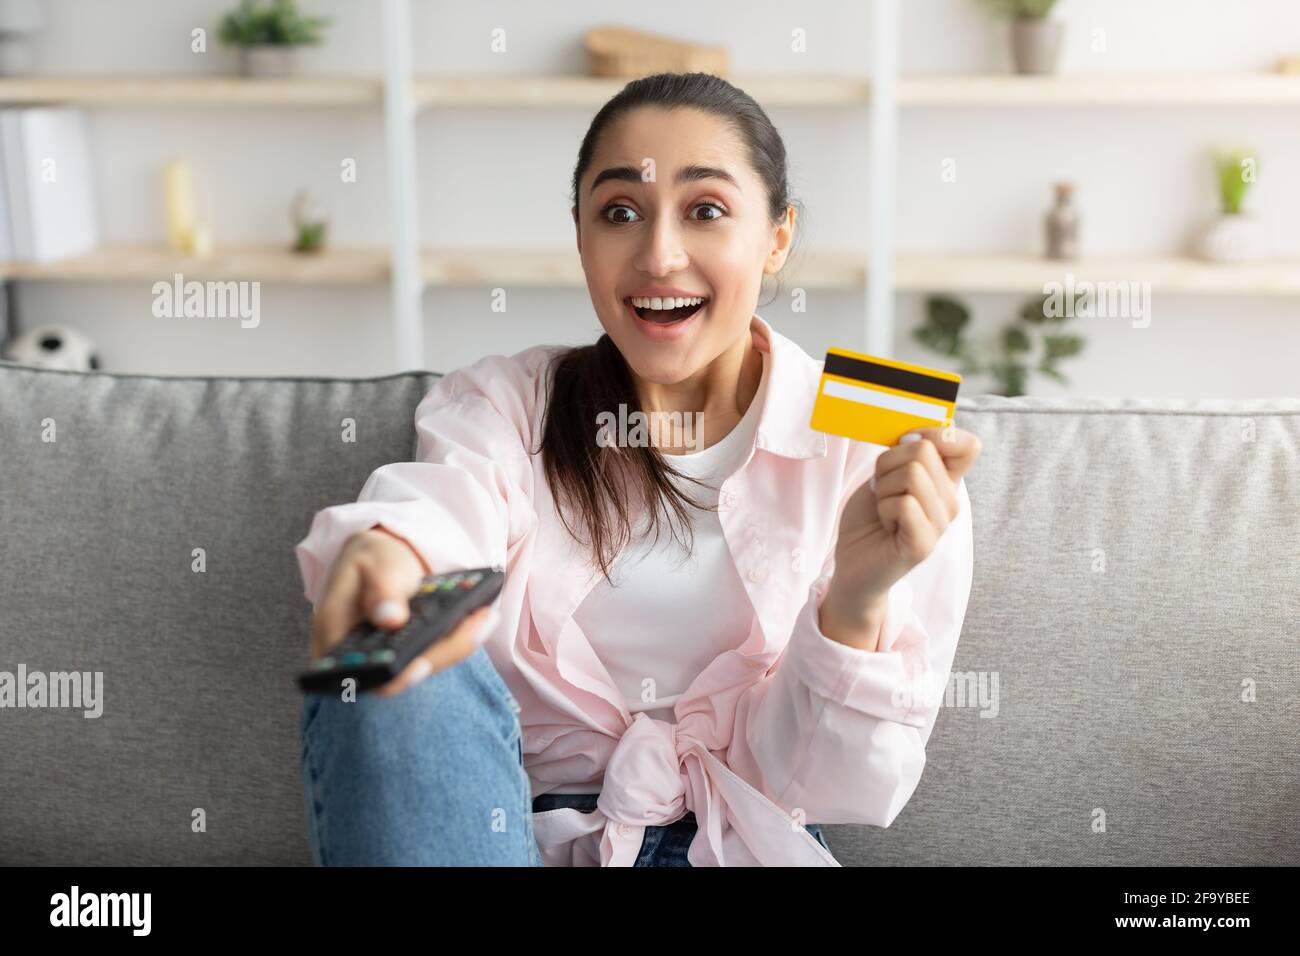 Femme excitée tenant la télécommande et la carte de crédit de débit Banque D'Images